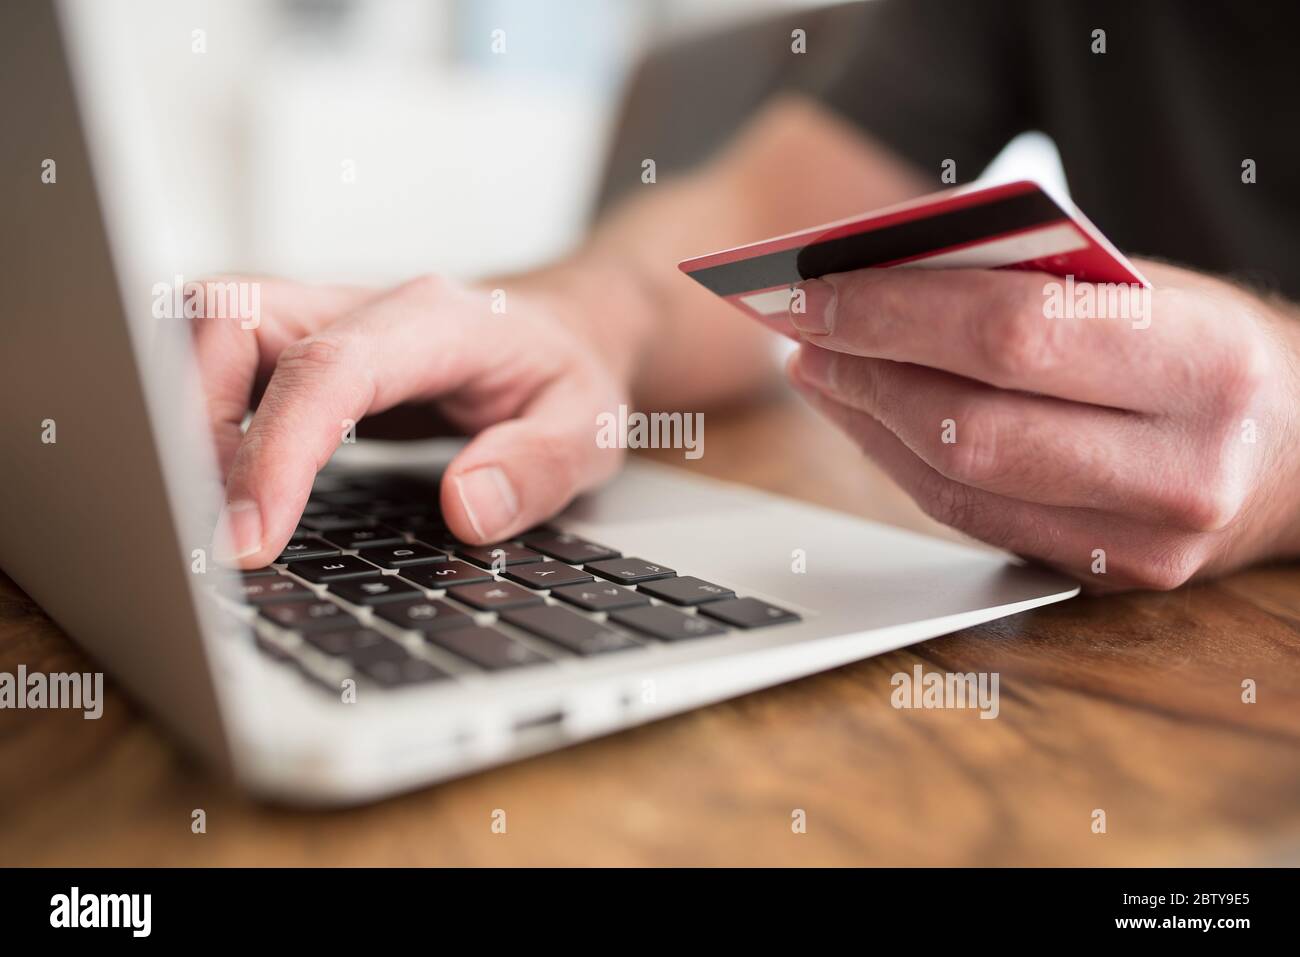 concetto di shopping online, persona che immette le informazioni di pagamento sul computer portatile che tiene in mano debito o carta di credito Foto Stock